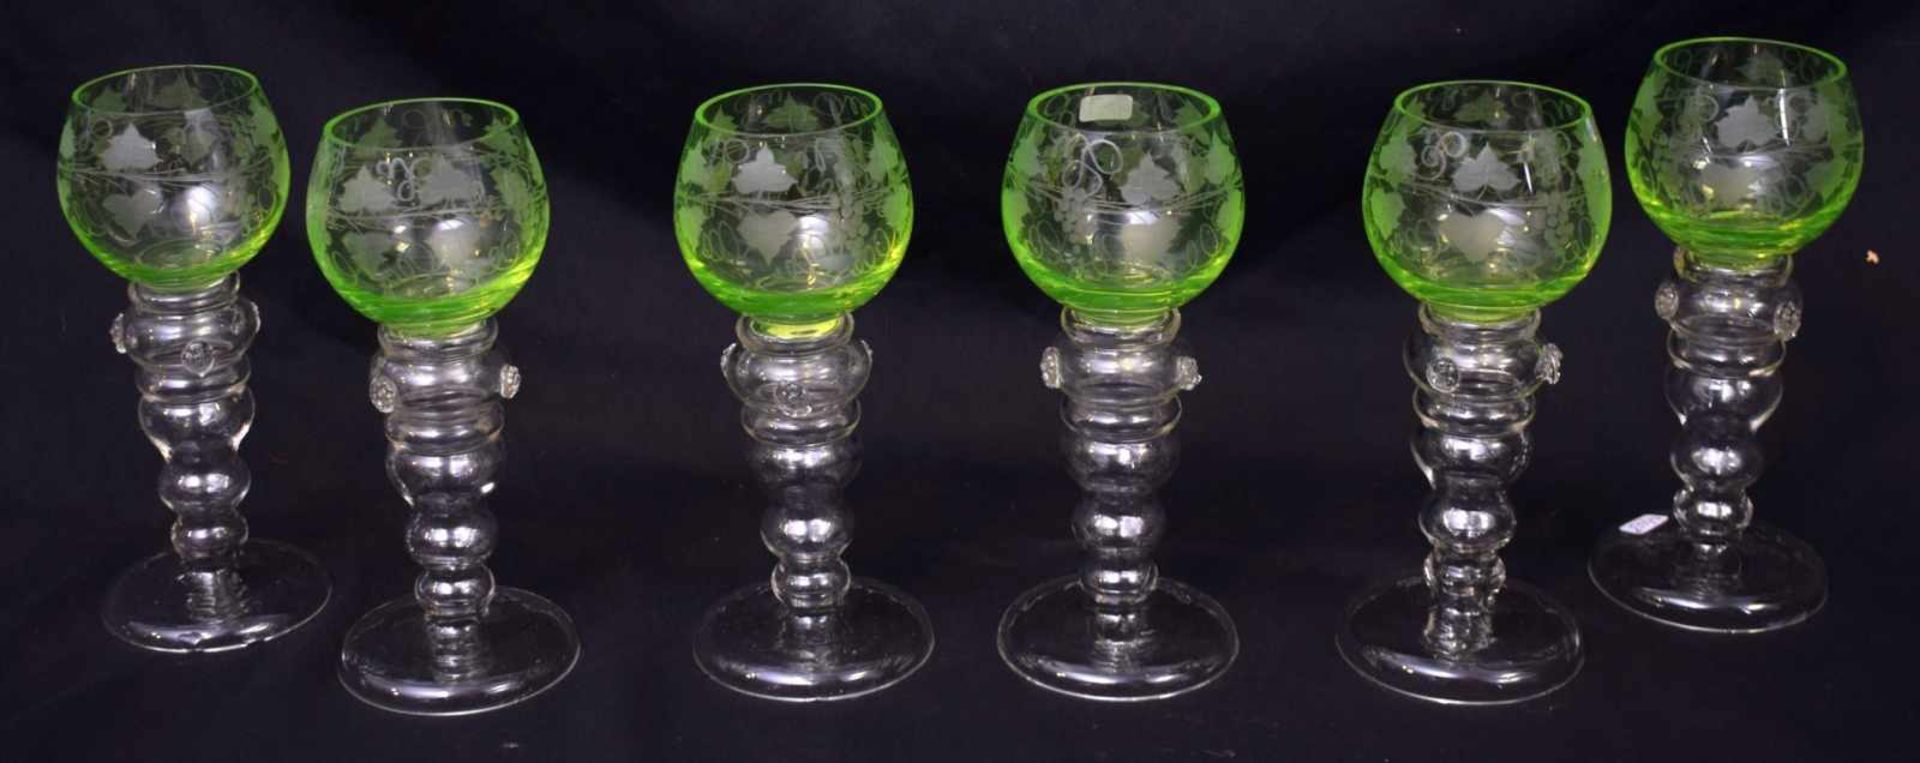 Sechs Weingläserfarbl. Glas, runder Fuß, Kelch mit Weinranken geschliffen verziert, grüner Überfang,